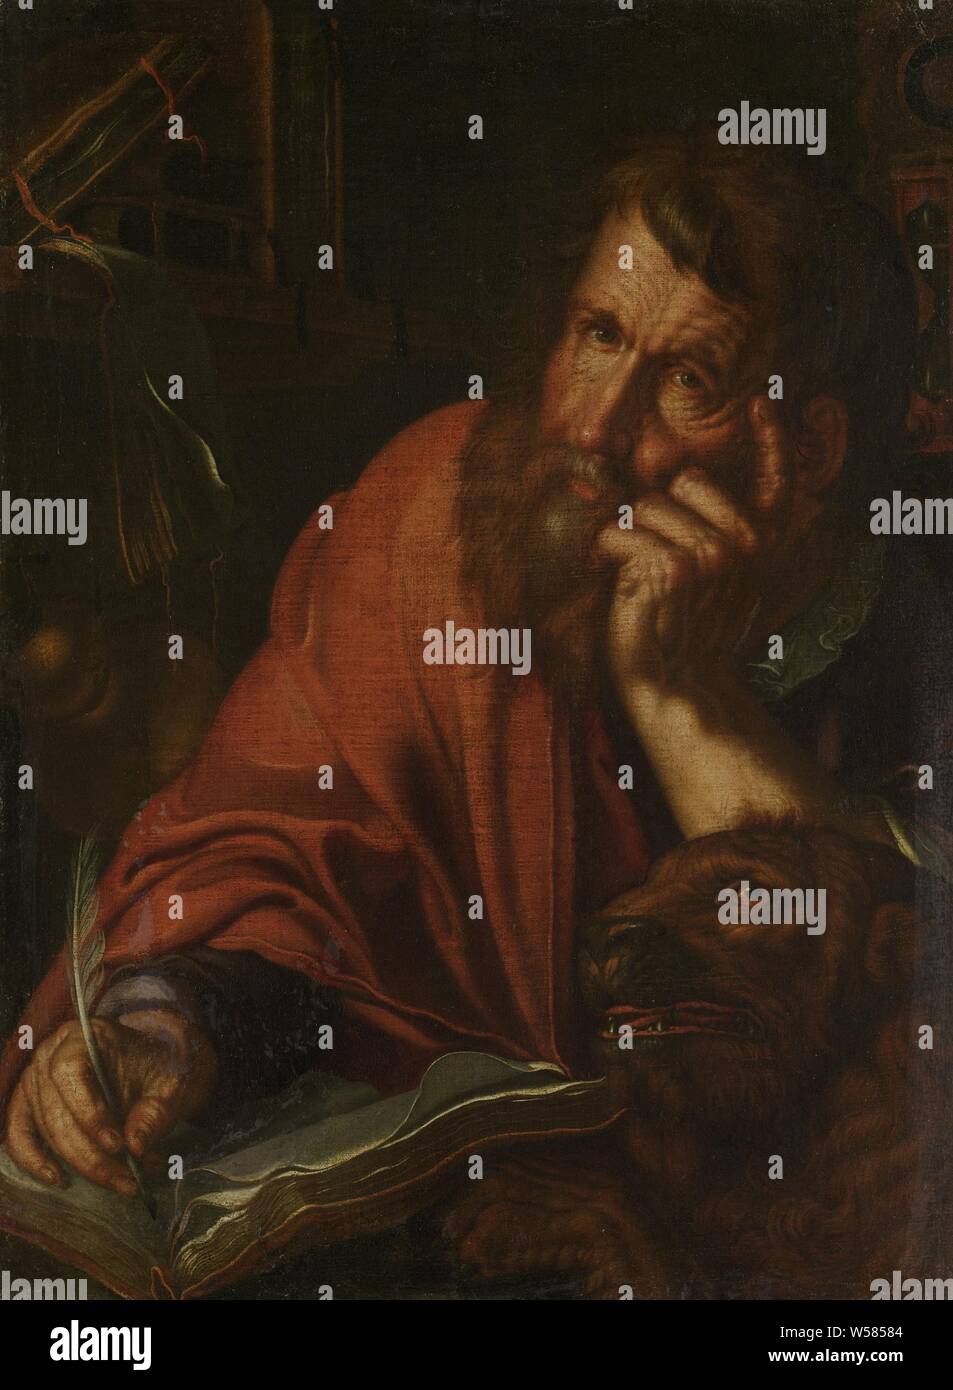 L'évangéliste saint Marc, l'évangéliste Marc, demi-figure par écrit dans un livre. Sur la droite un lion, sur la gauche une bibliothèque, Joachim Wtewael, 1610 - 1615, la toile, la peinture à l'huile (peinture), H 68 cm × w 50 cm Banque D'Images